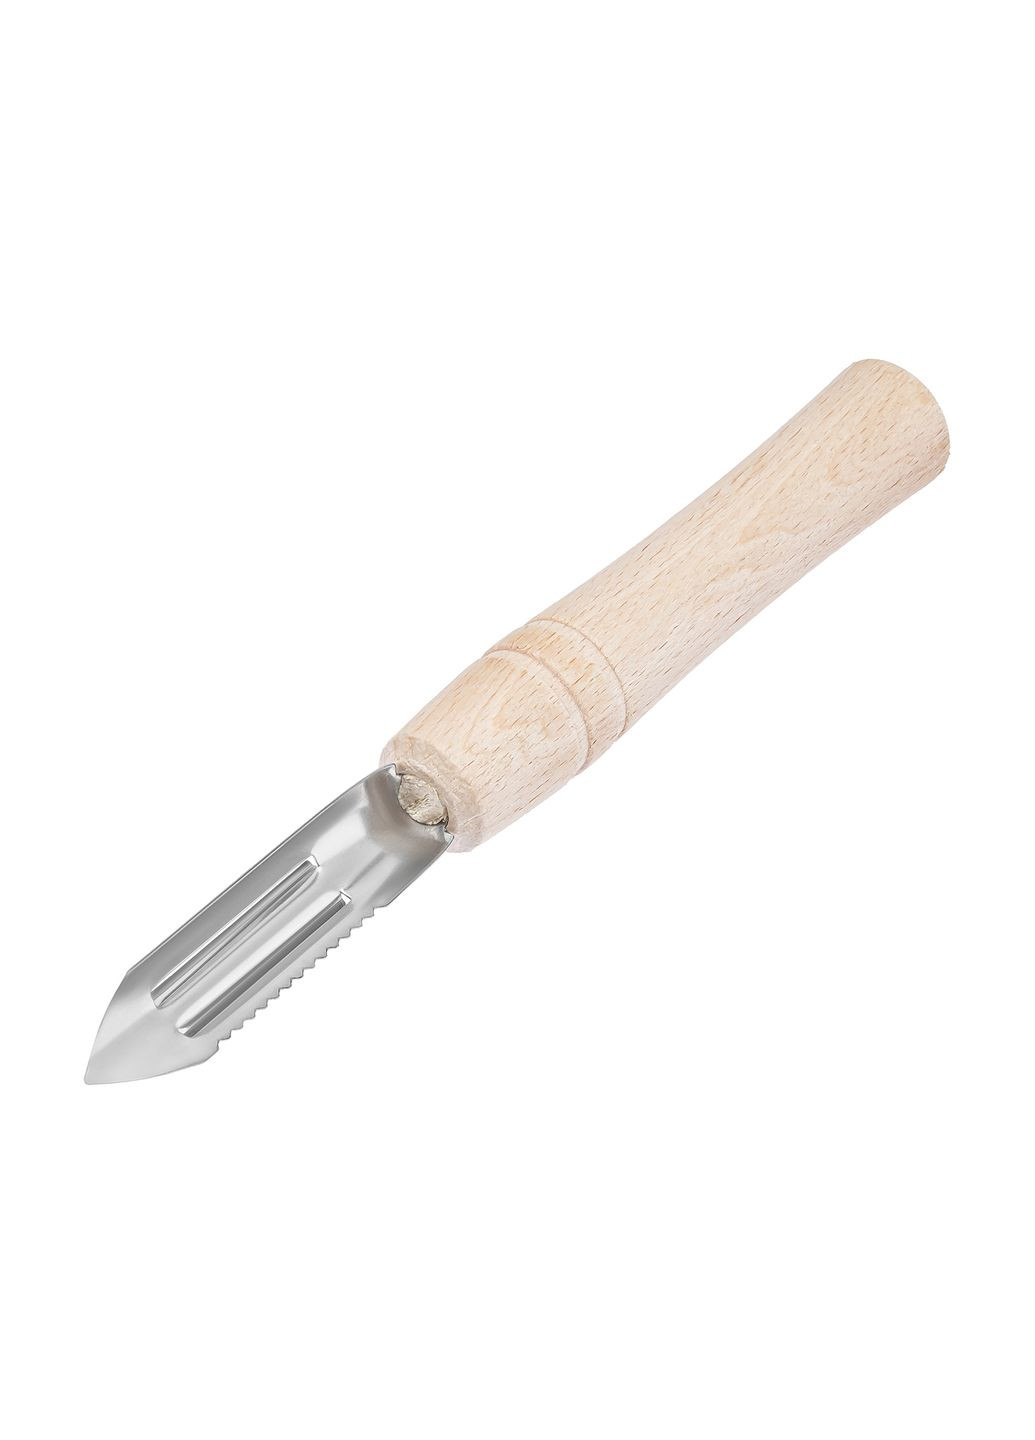 Овочечистка-рибочистка 2 в 1 з дерев'яною ручкою "Економка"17.5 см Kitchette (260567610)